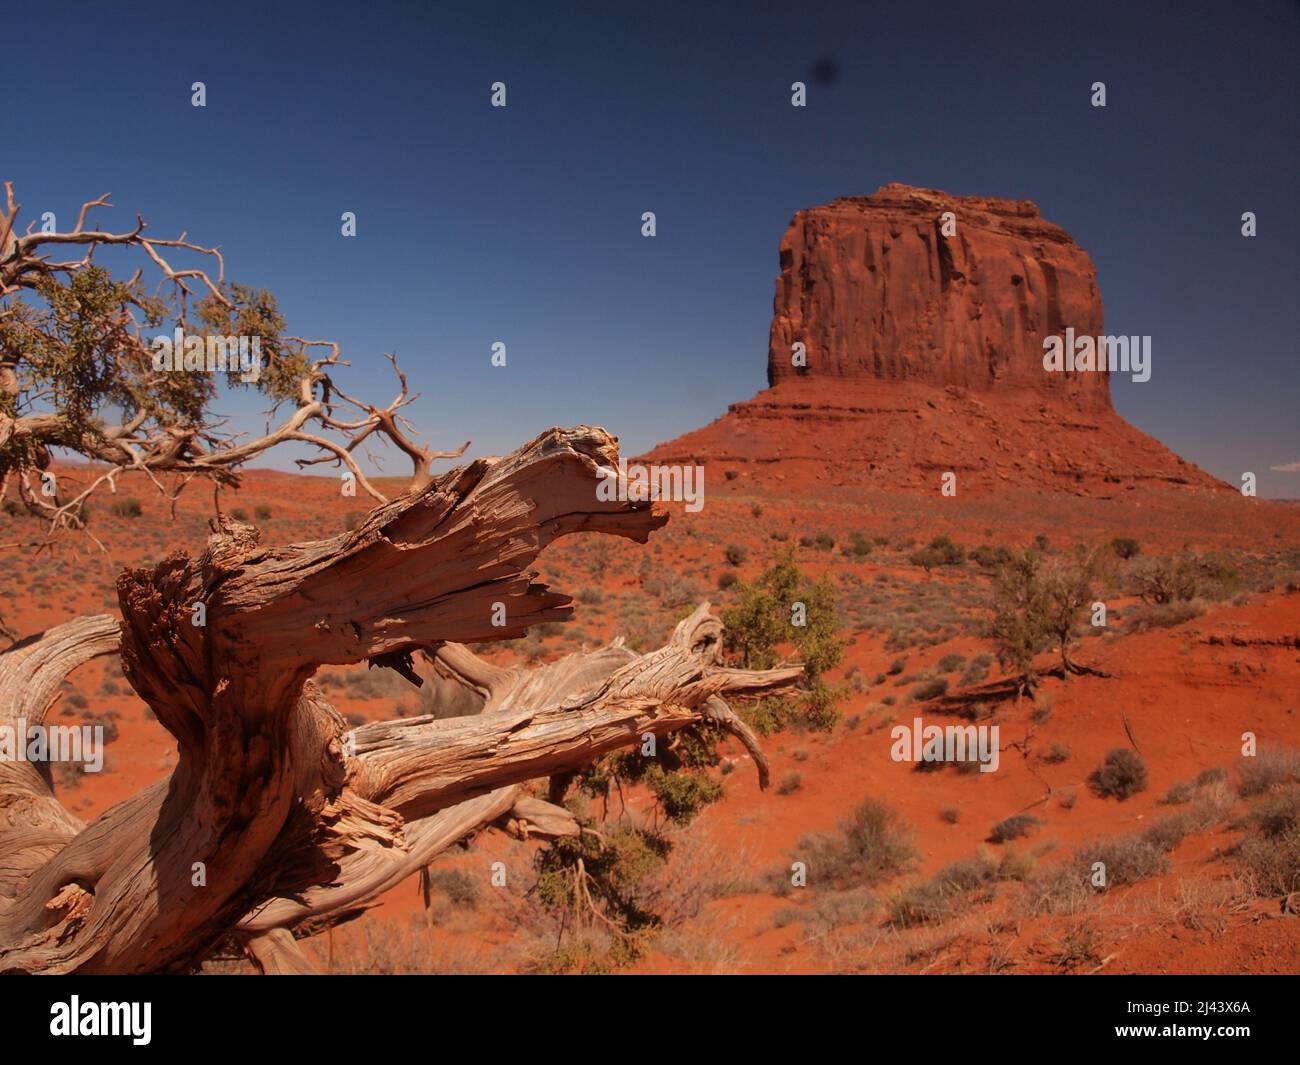 Monument Valley dans le nord de l'Arizona et le sud de l'Utah dans la nation Navajo. Site spectaculaire rendu célèbre dans les films américains occidentaux. Banque D'Images